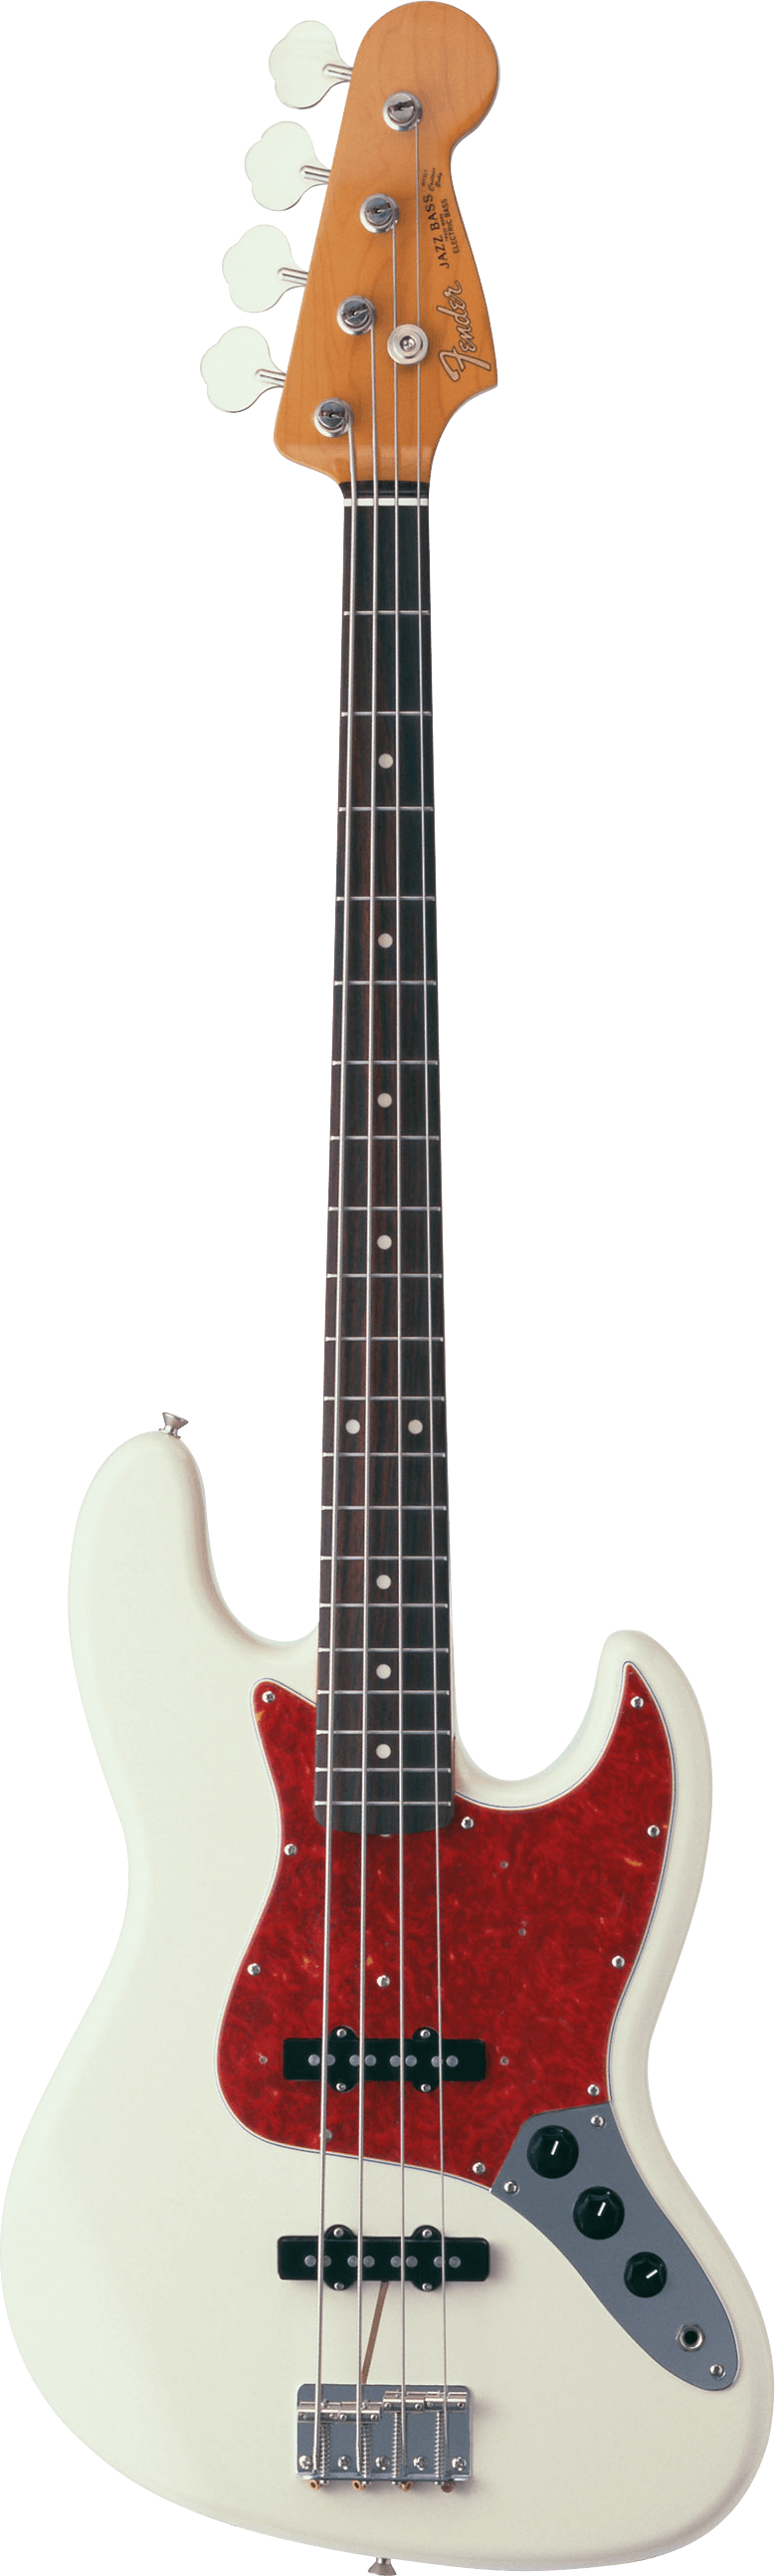 Fender Jazz Bass Guitar - Fender Jazz Bass Clipart (779x2588), Png Download